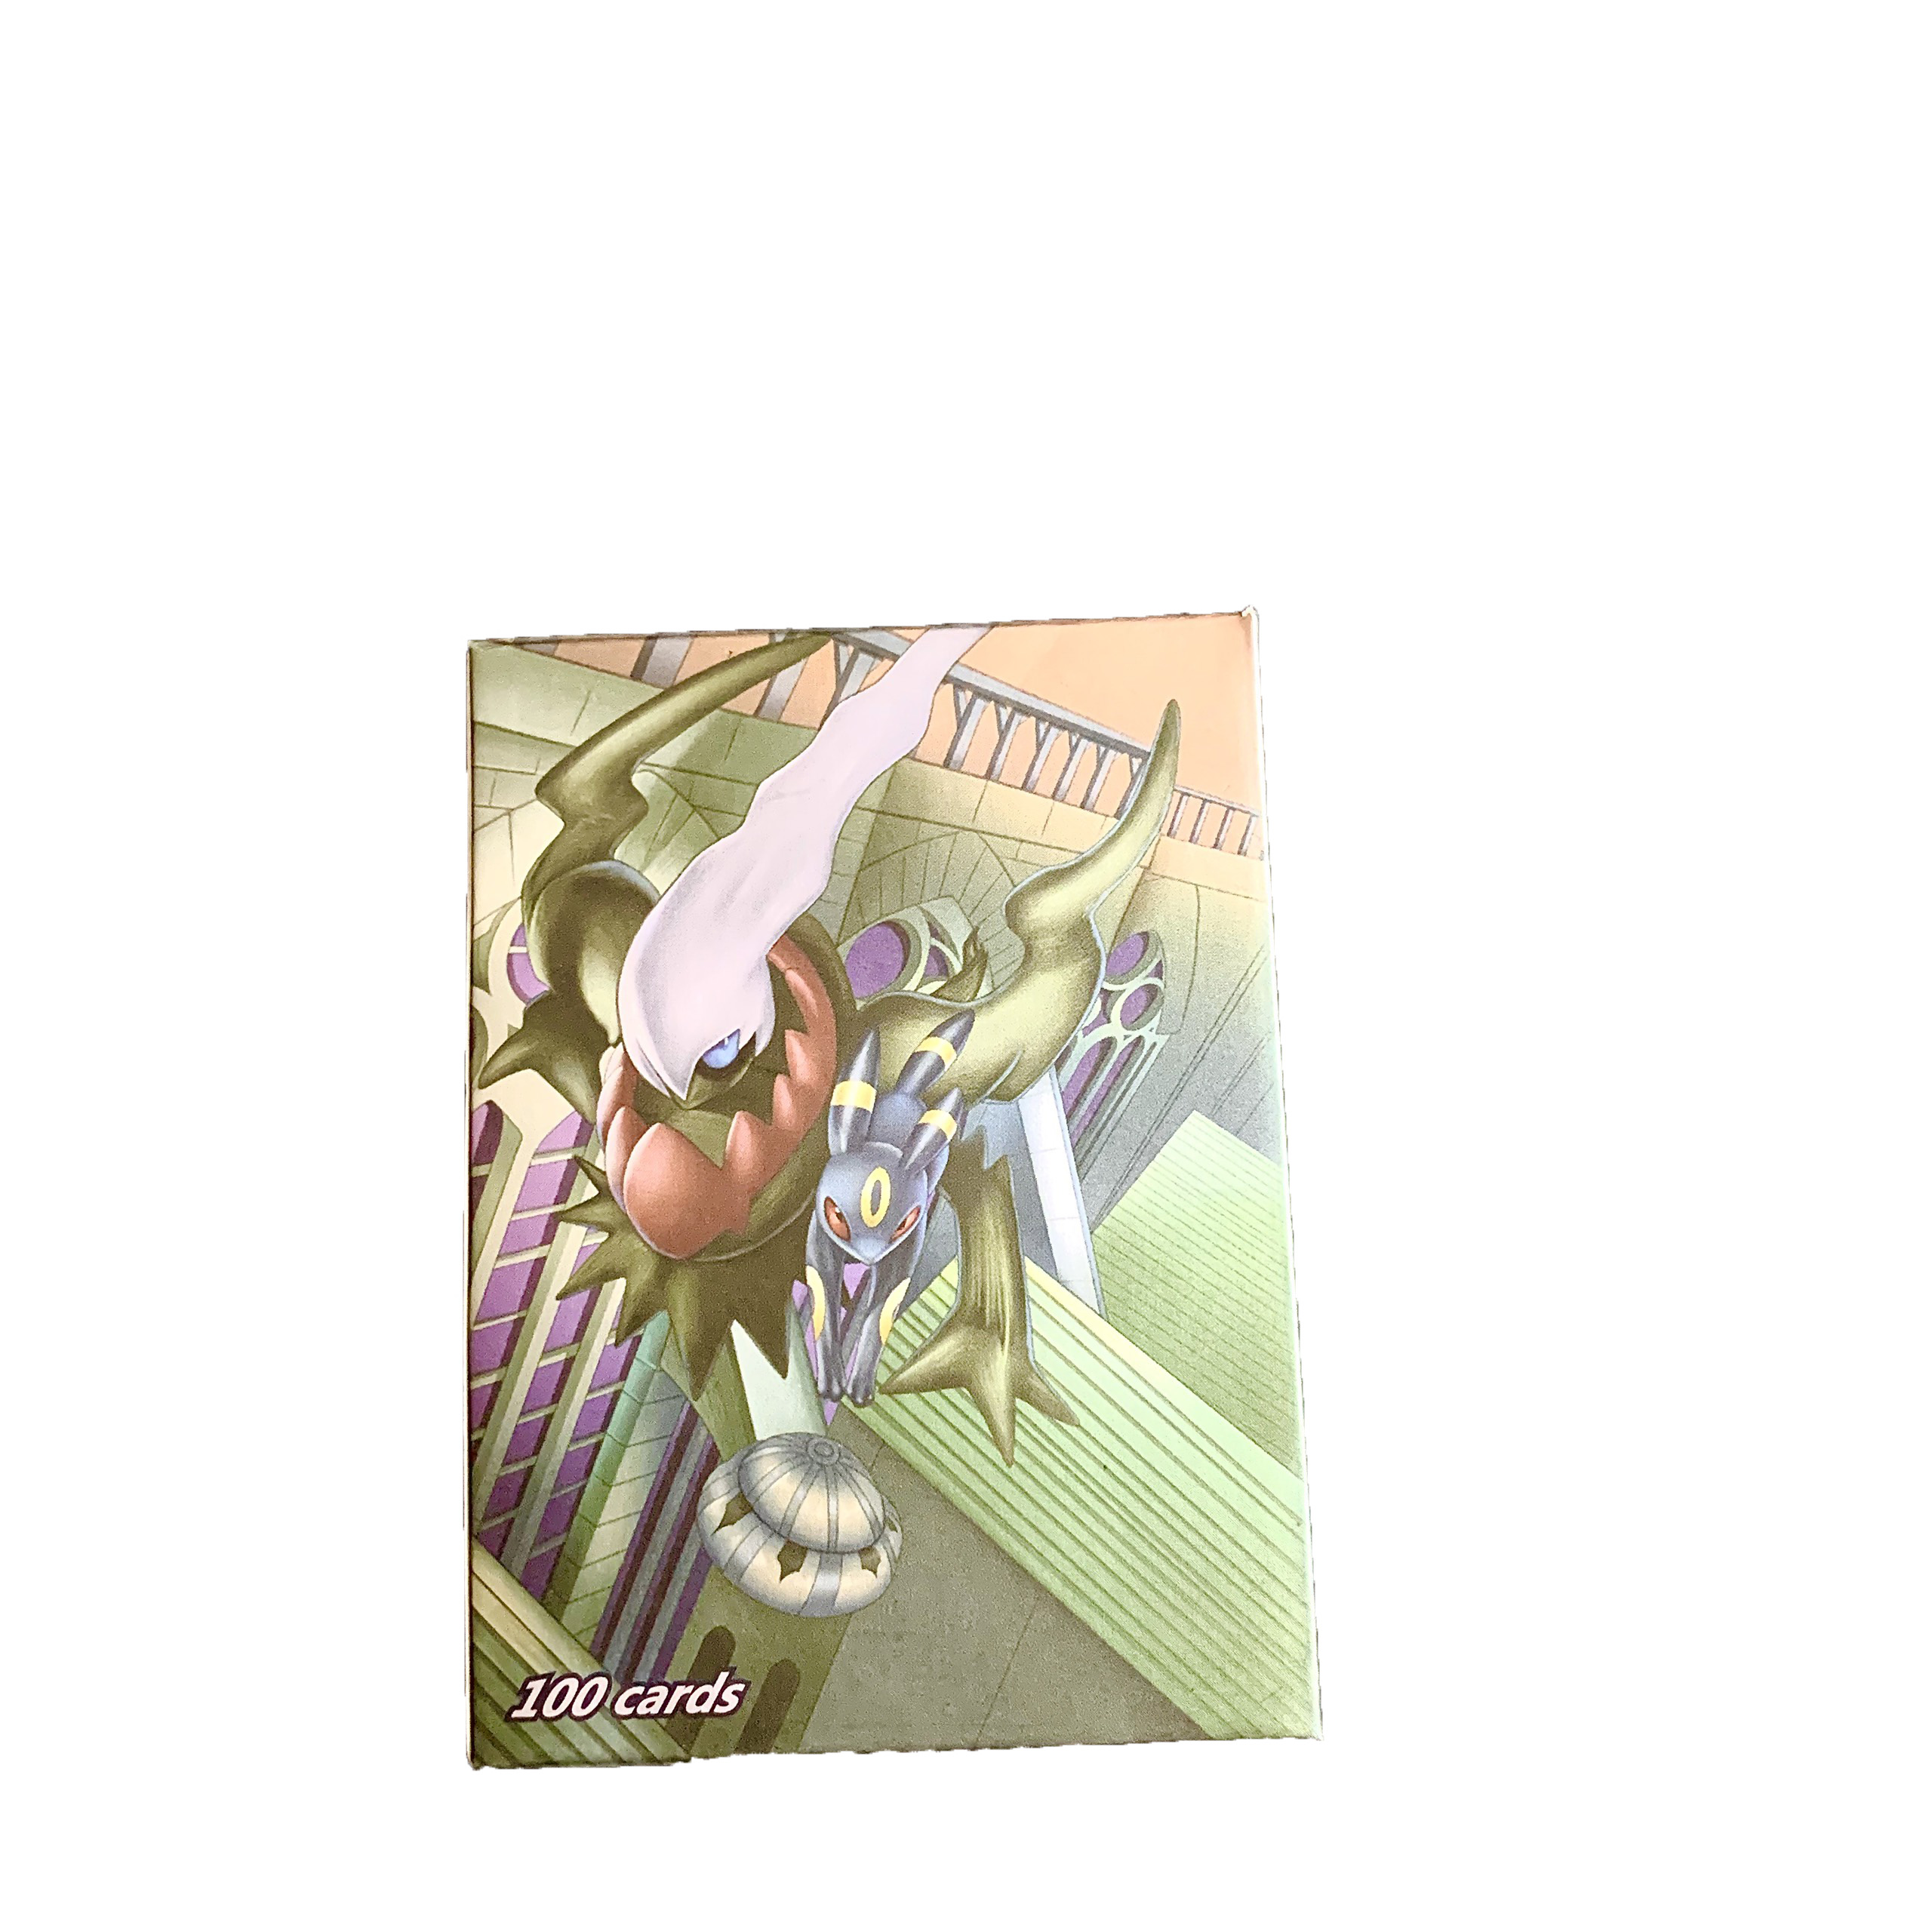 Bộ Thẻ Bài Chơi Pokemon 100 Thẻ (32Gx,62Tagteam,6Trainer) Chơi Đối Kháng New Đẹp